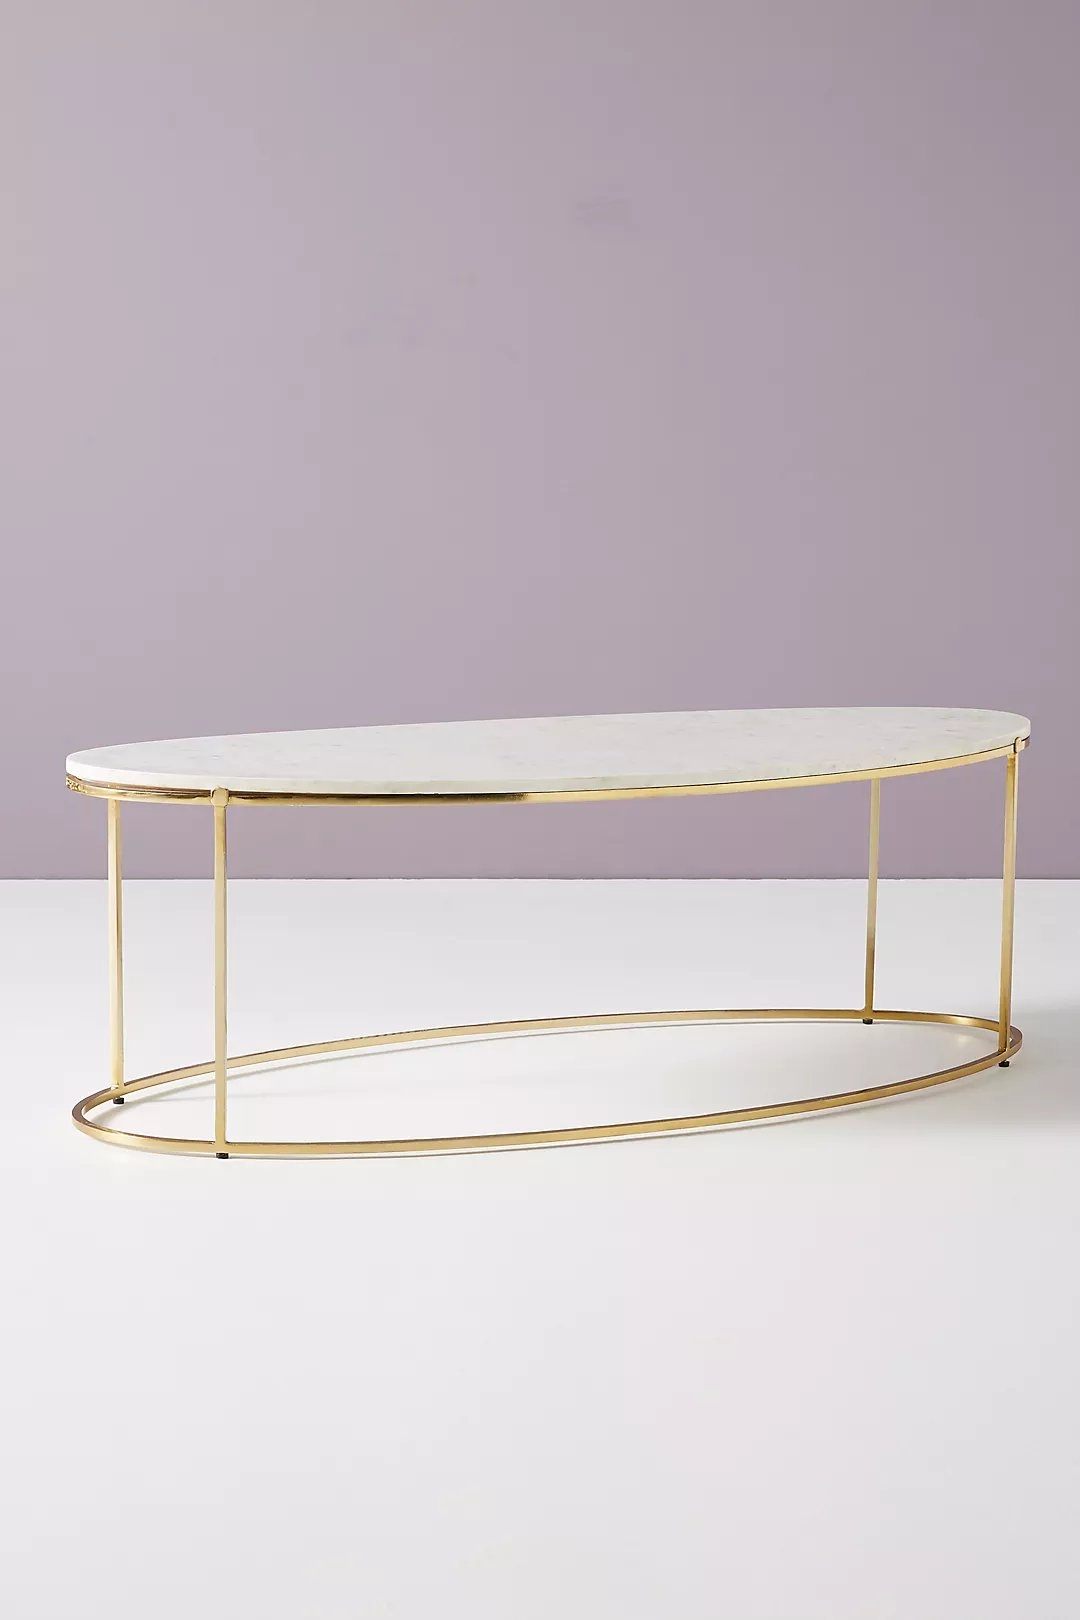 Leavenworth Oval Marble Coffee Table, 42" - Image 1